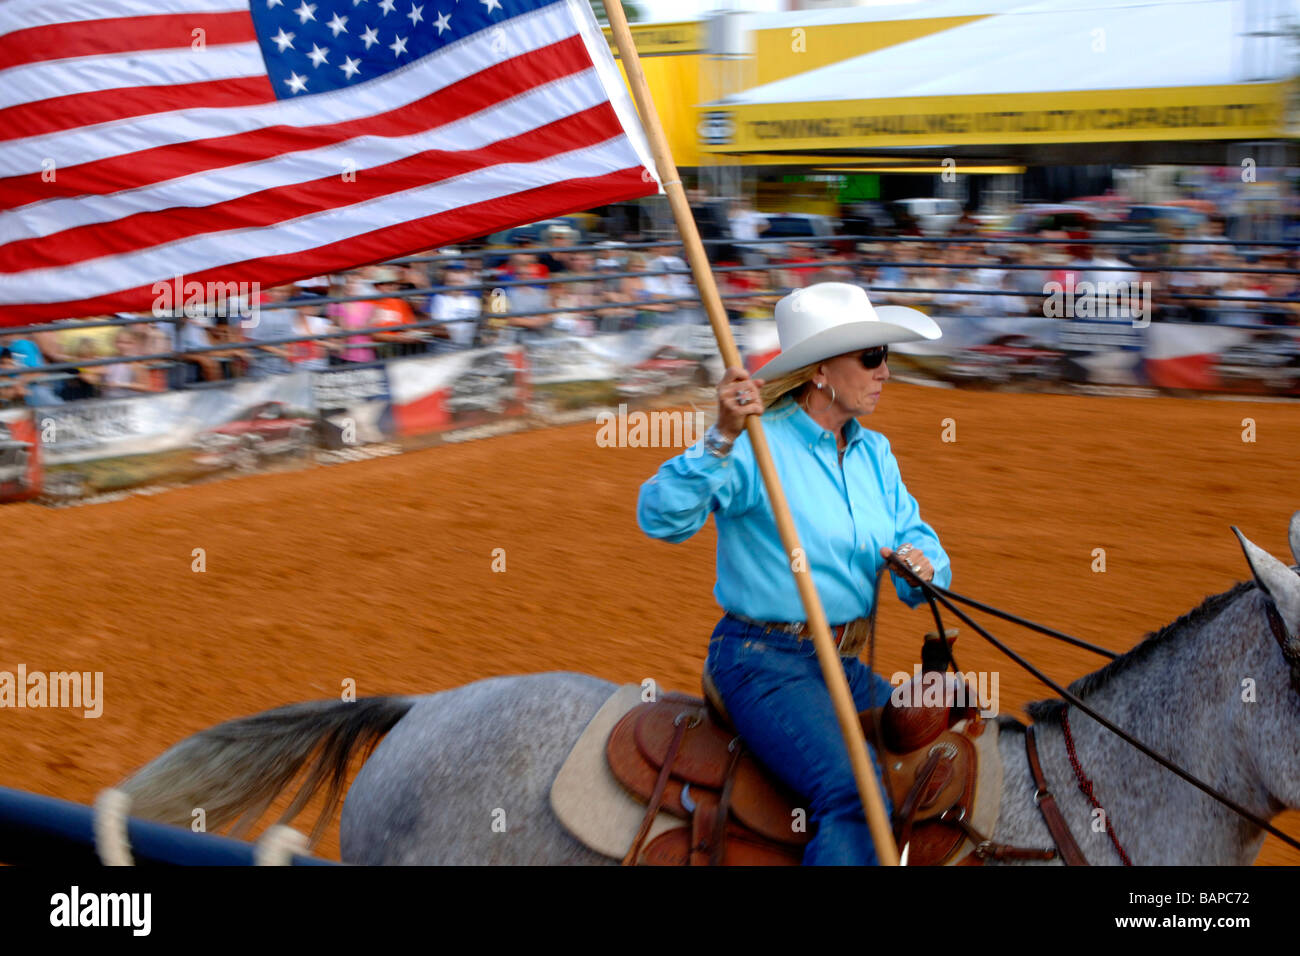 Cowgirl sur les courses de chevaux par la foule dans l'arène de rodéo pendant l'affichage de l'étoile et les bars ou le drapeau de l'United States Banque D'Images